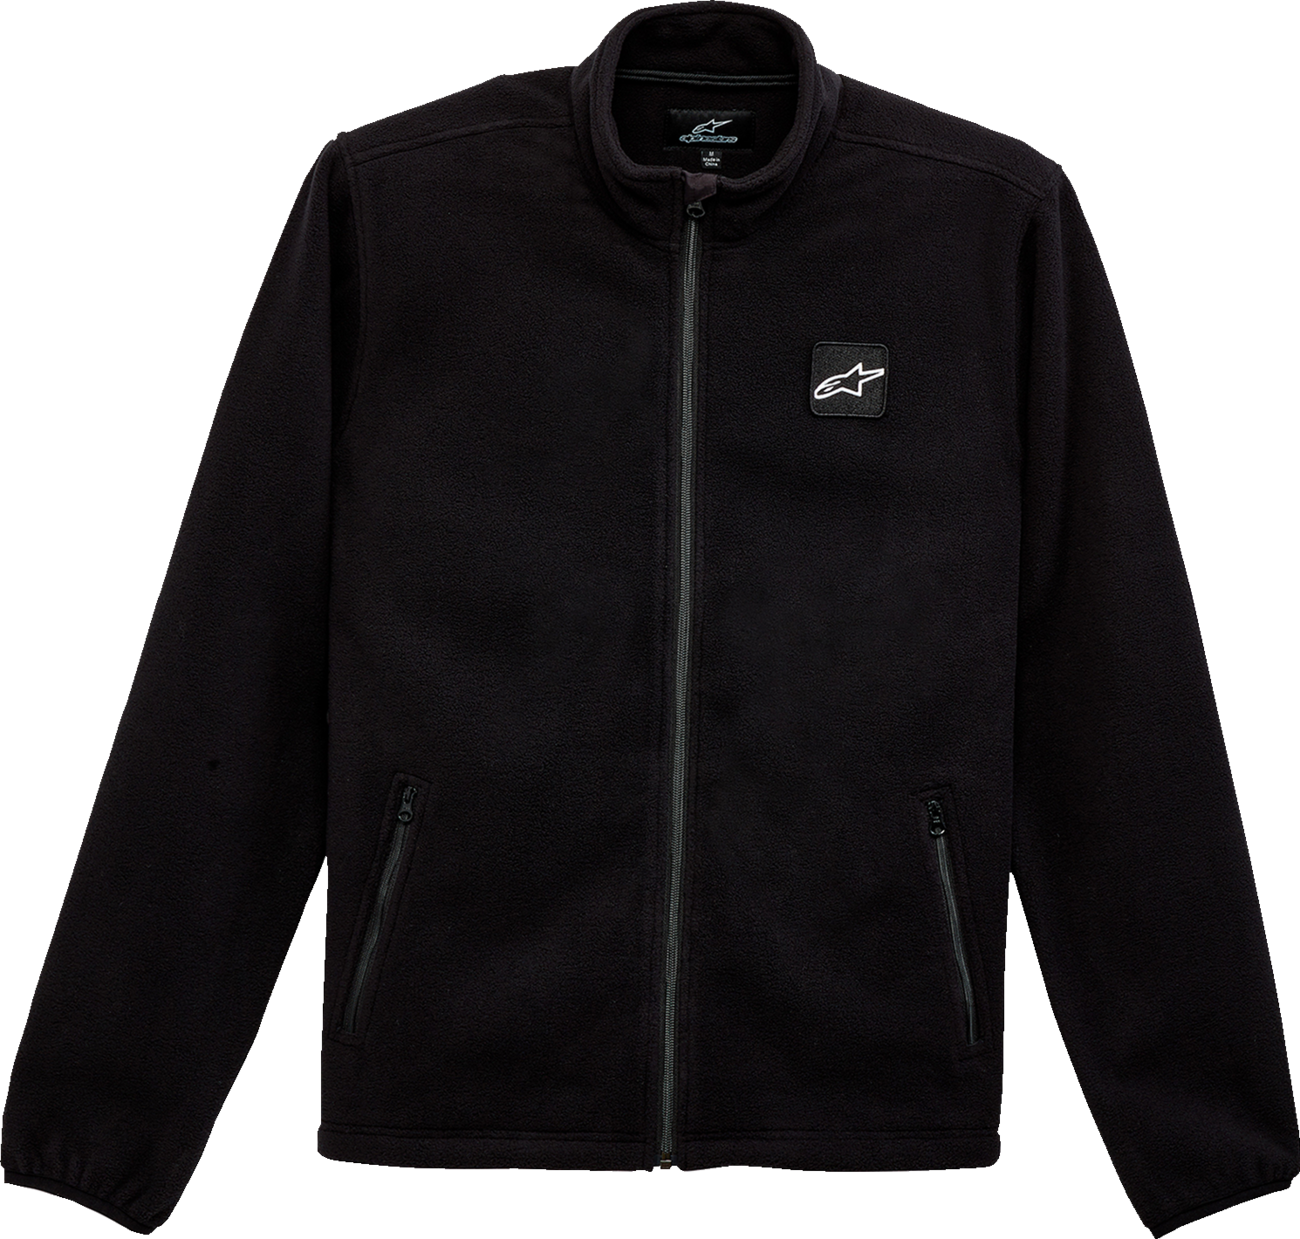 ALPINESTARS Periphery Jacket - Black - Medium 1232-51200-10-M